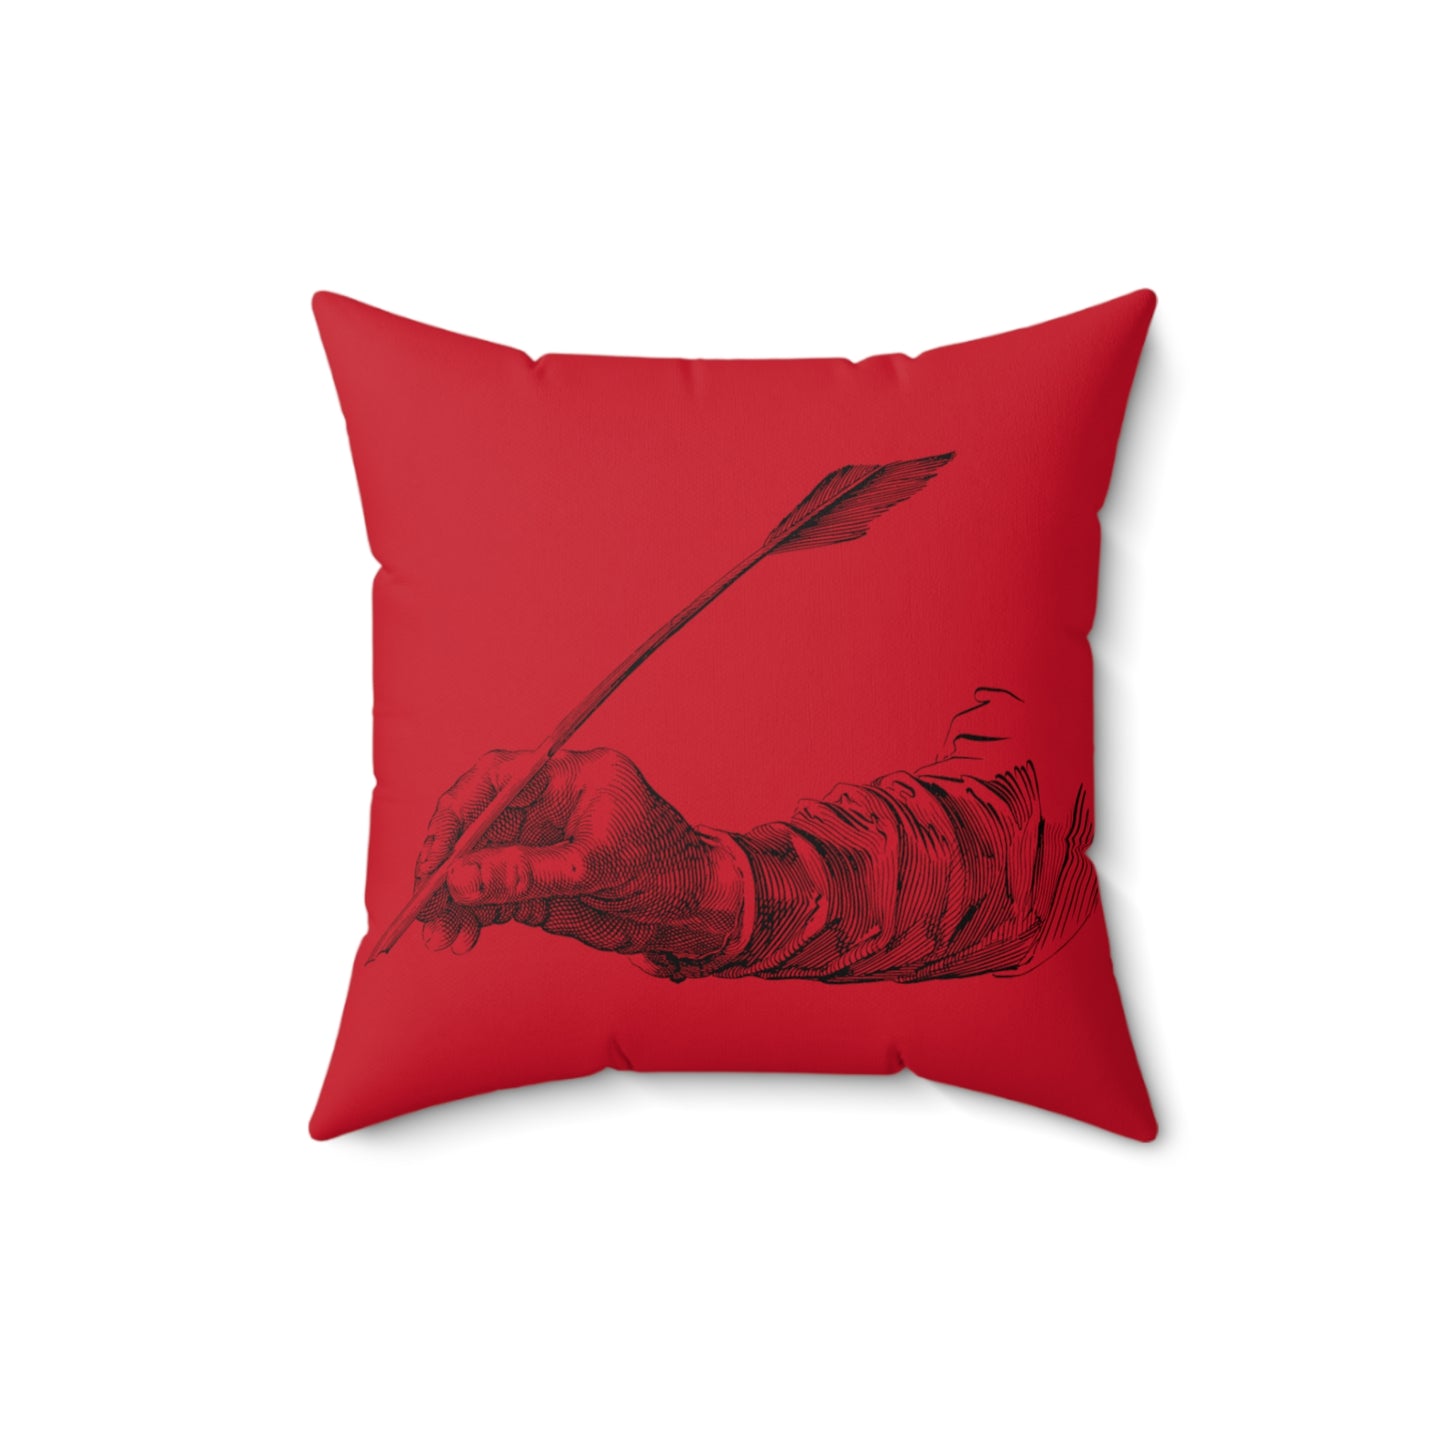 Spun Polyester Square Pillow: Writing Dark Red